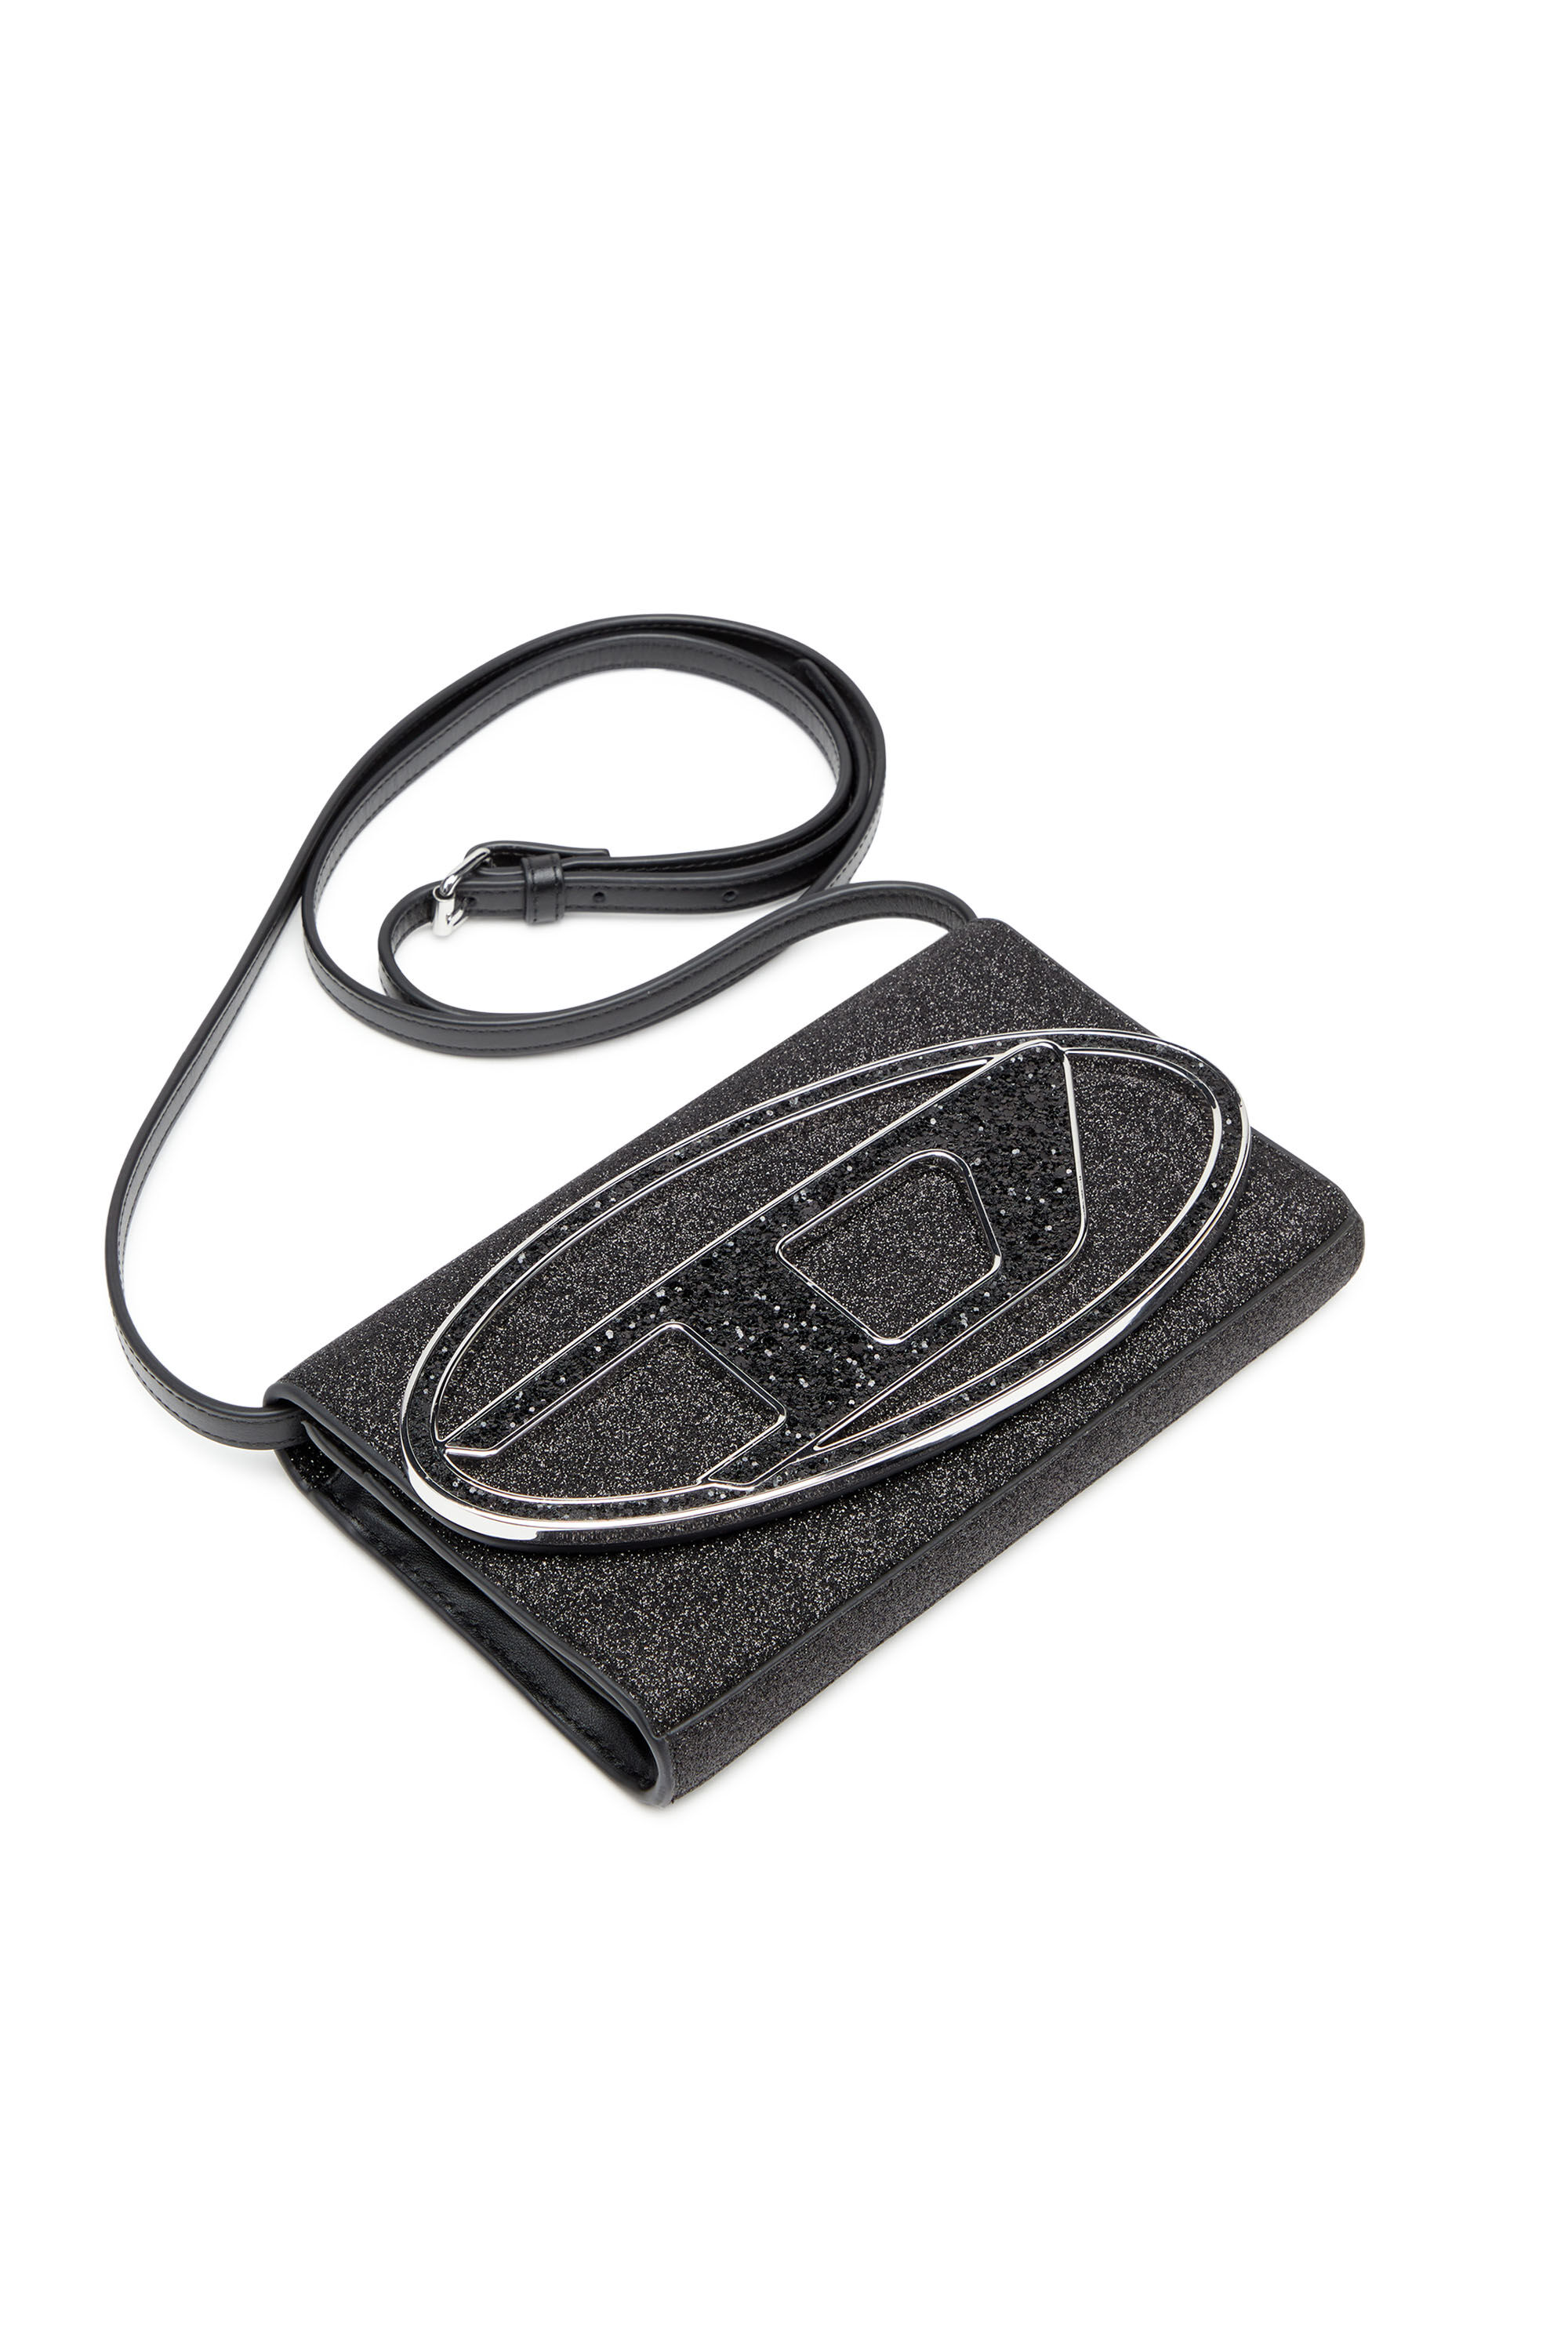 Women's Wallet bag in glitter fabric | Black | Diesel